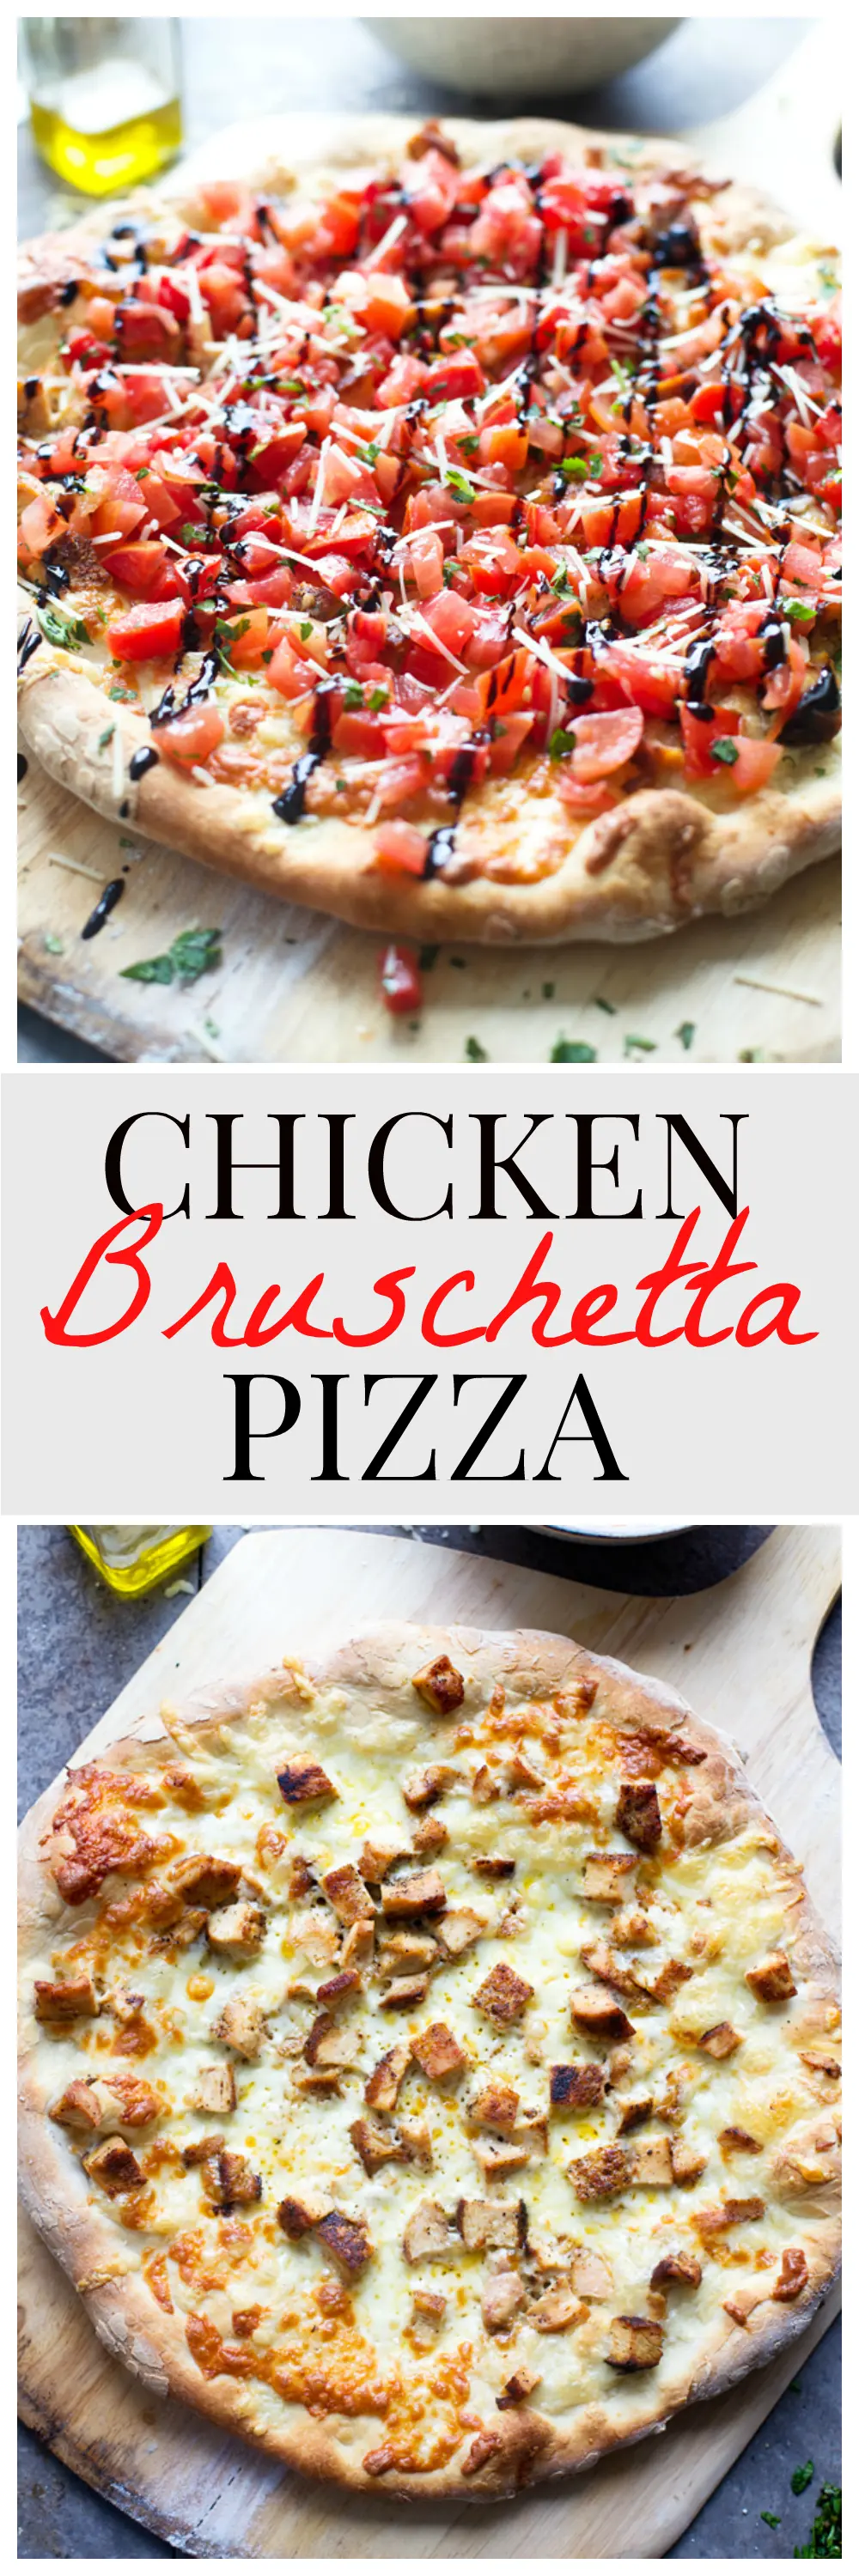 Easy Bruschetta Chicken Pizza